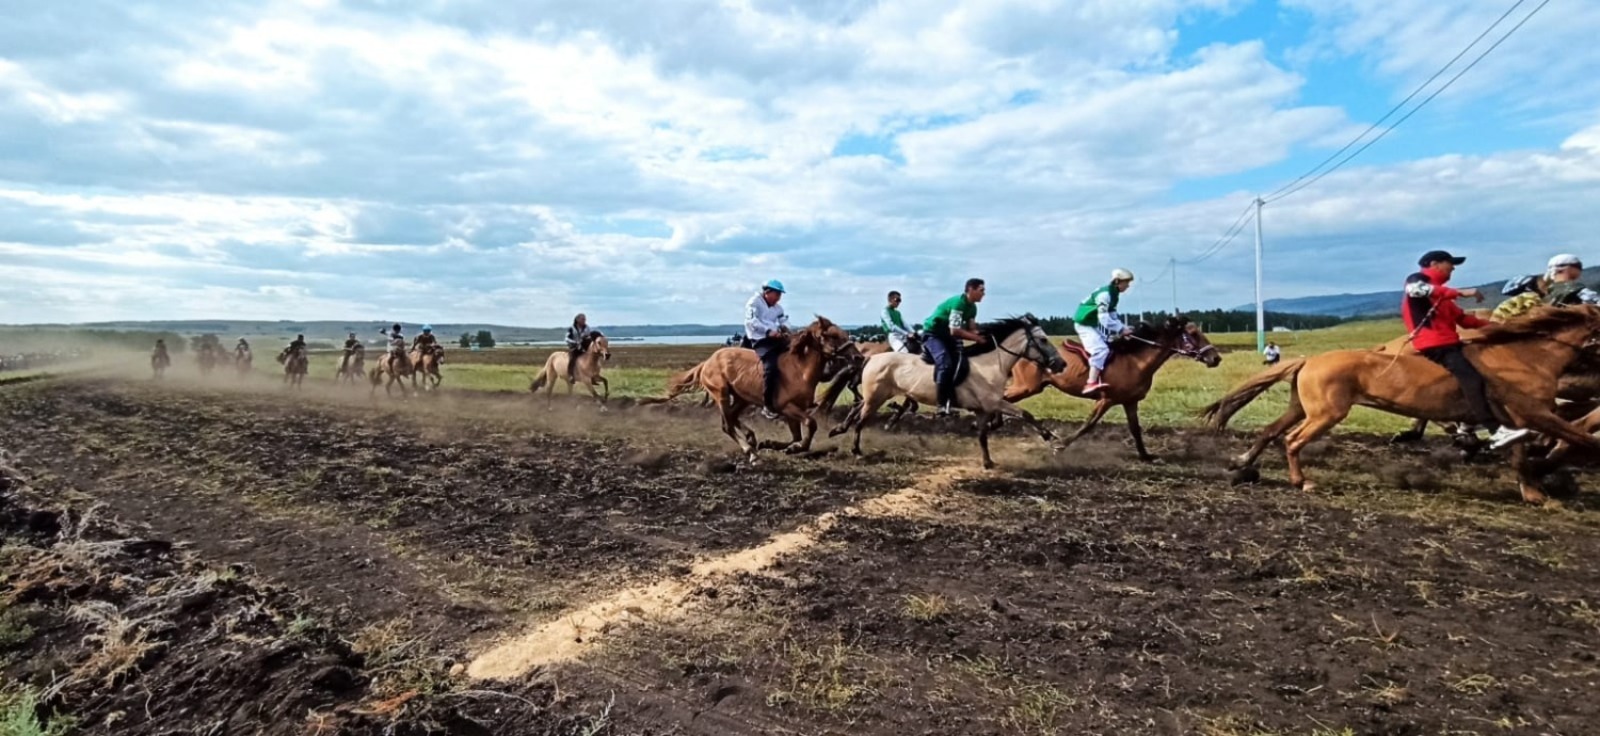 На фестивале башкирской лошади прошли игра «Ылак» и скачки